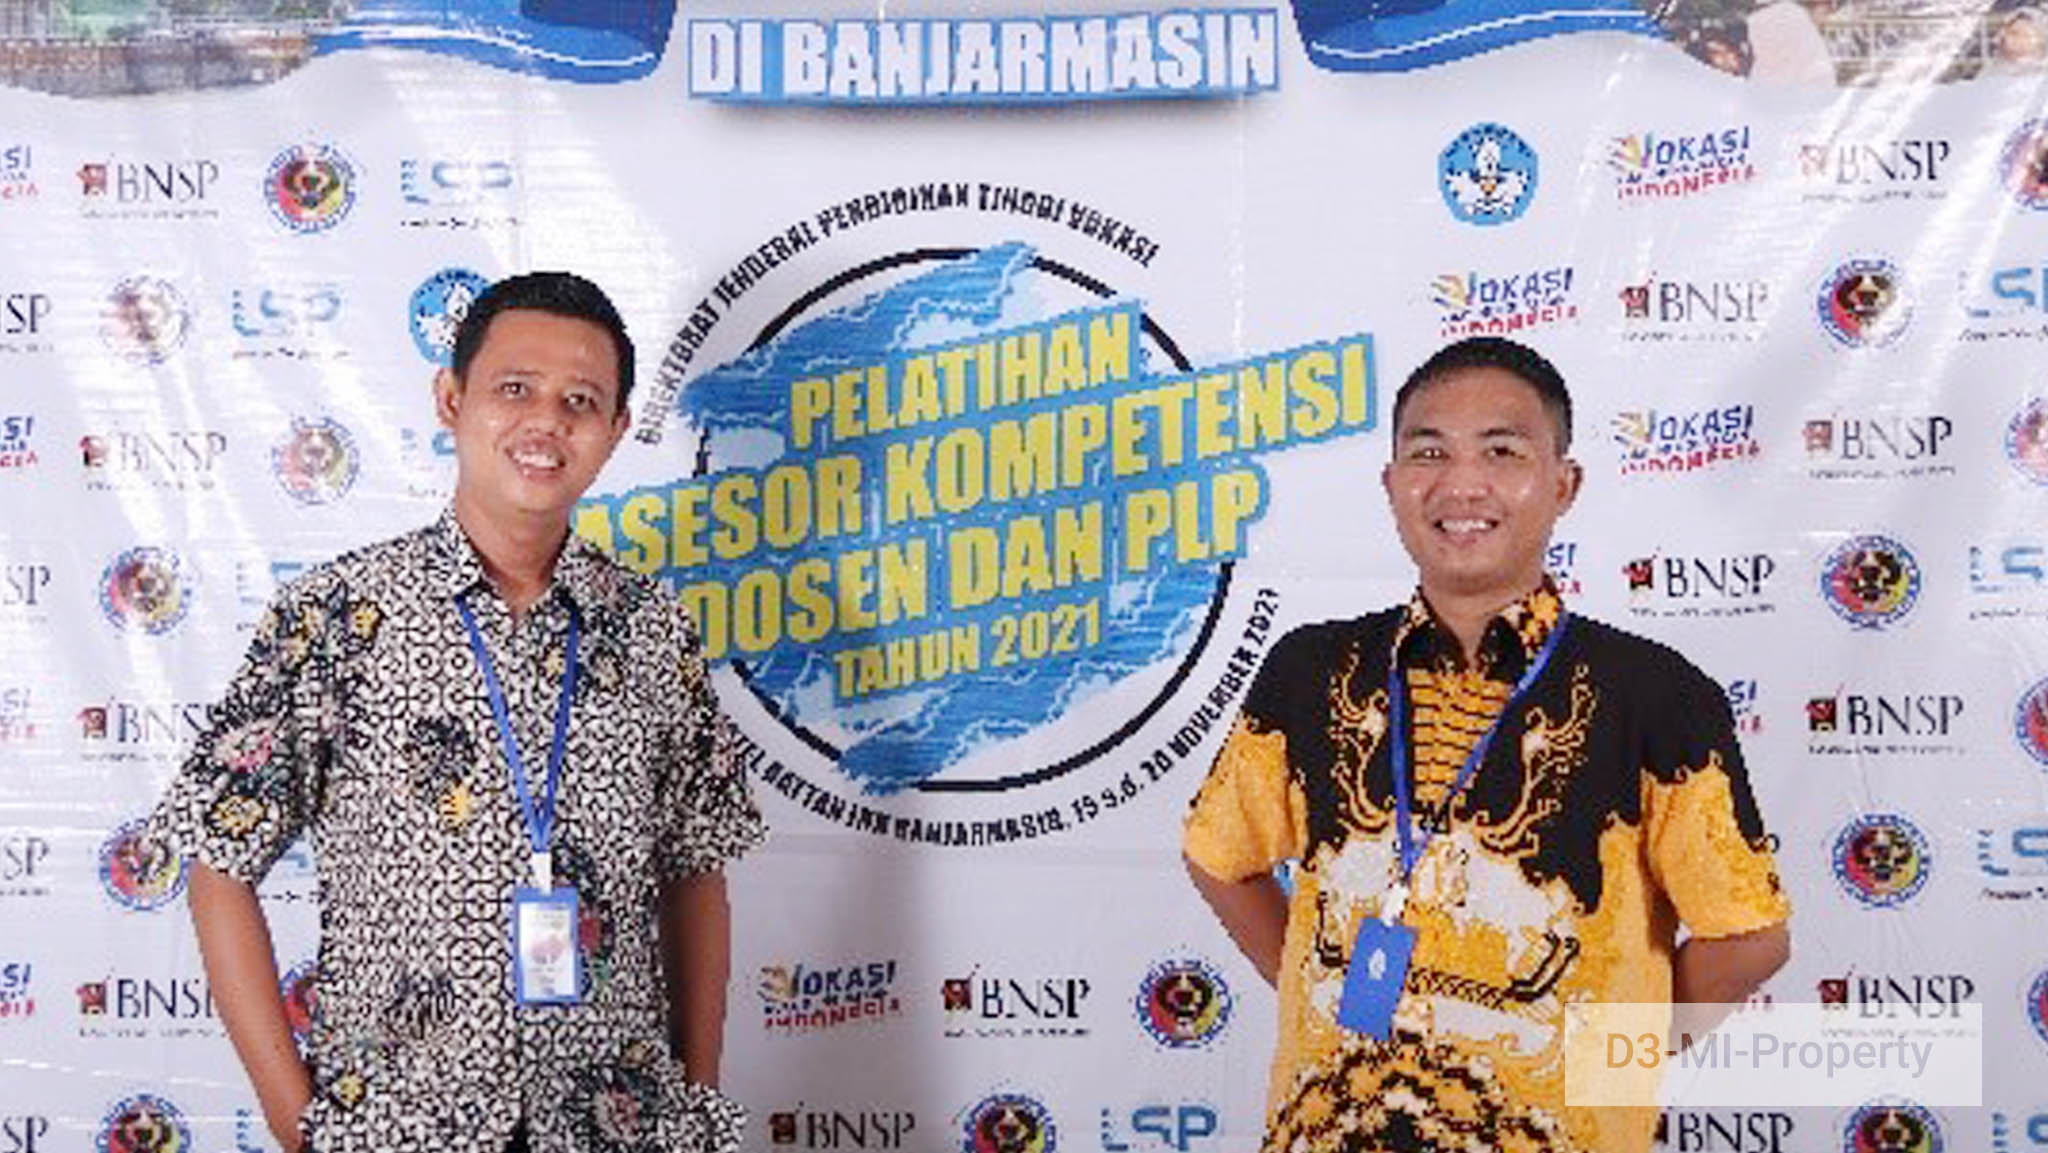 Asesor Kompetensi D3 Manajemen Informatika Politeknik Negeri Lampung